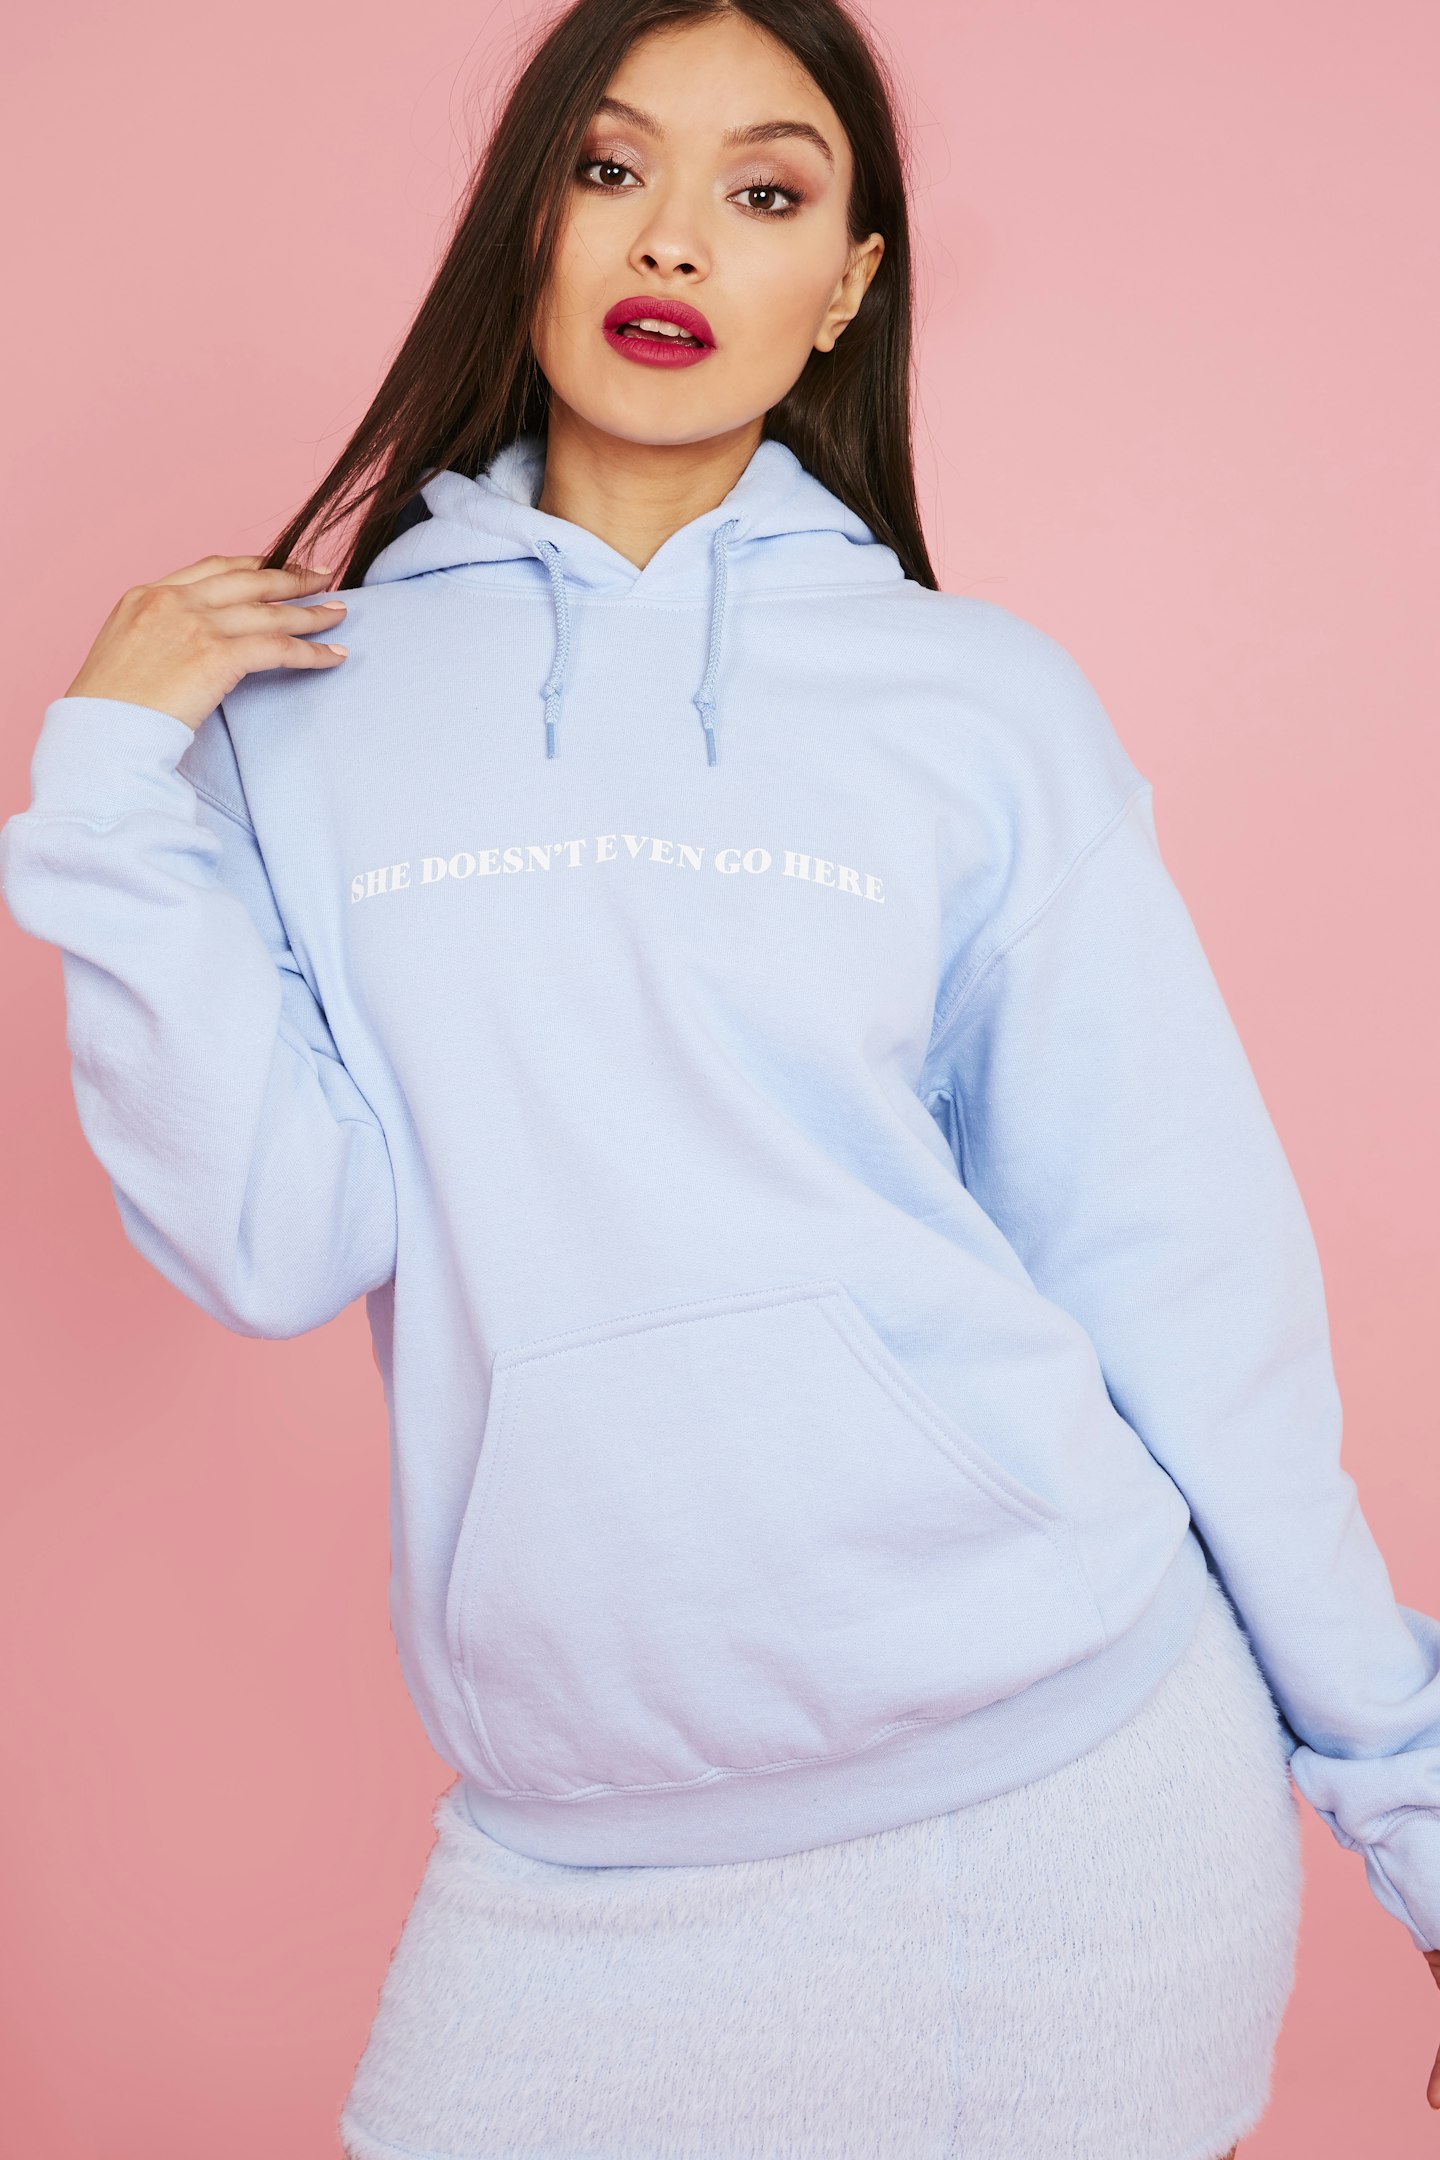 Skinny Dip x Mean Girls cropped sweatshirt in pink